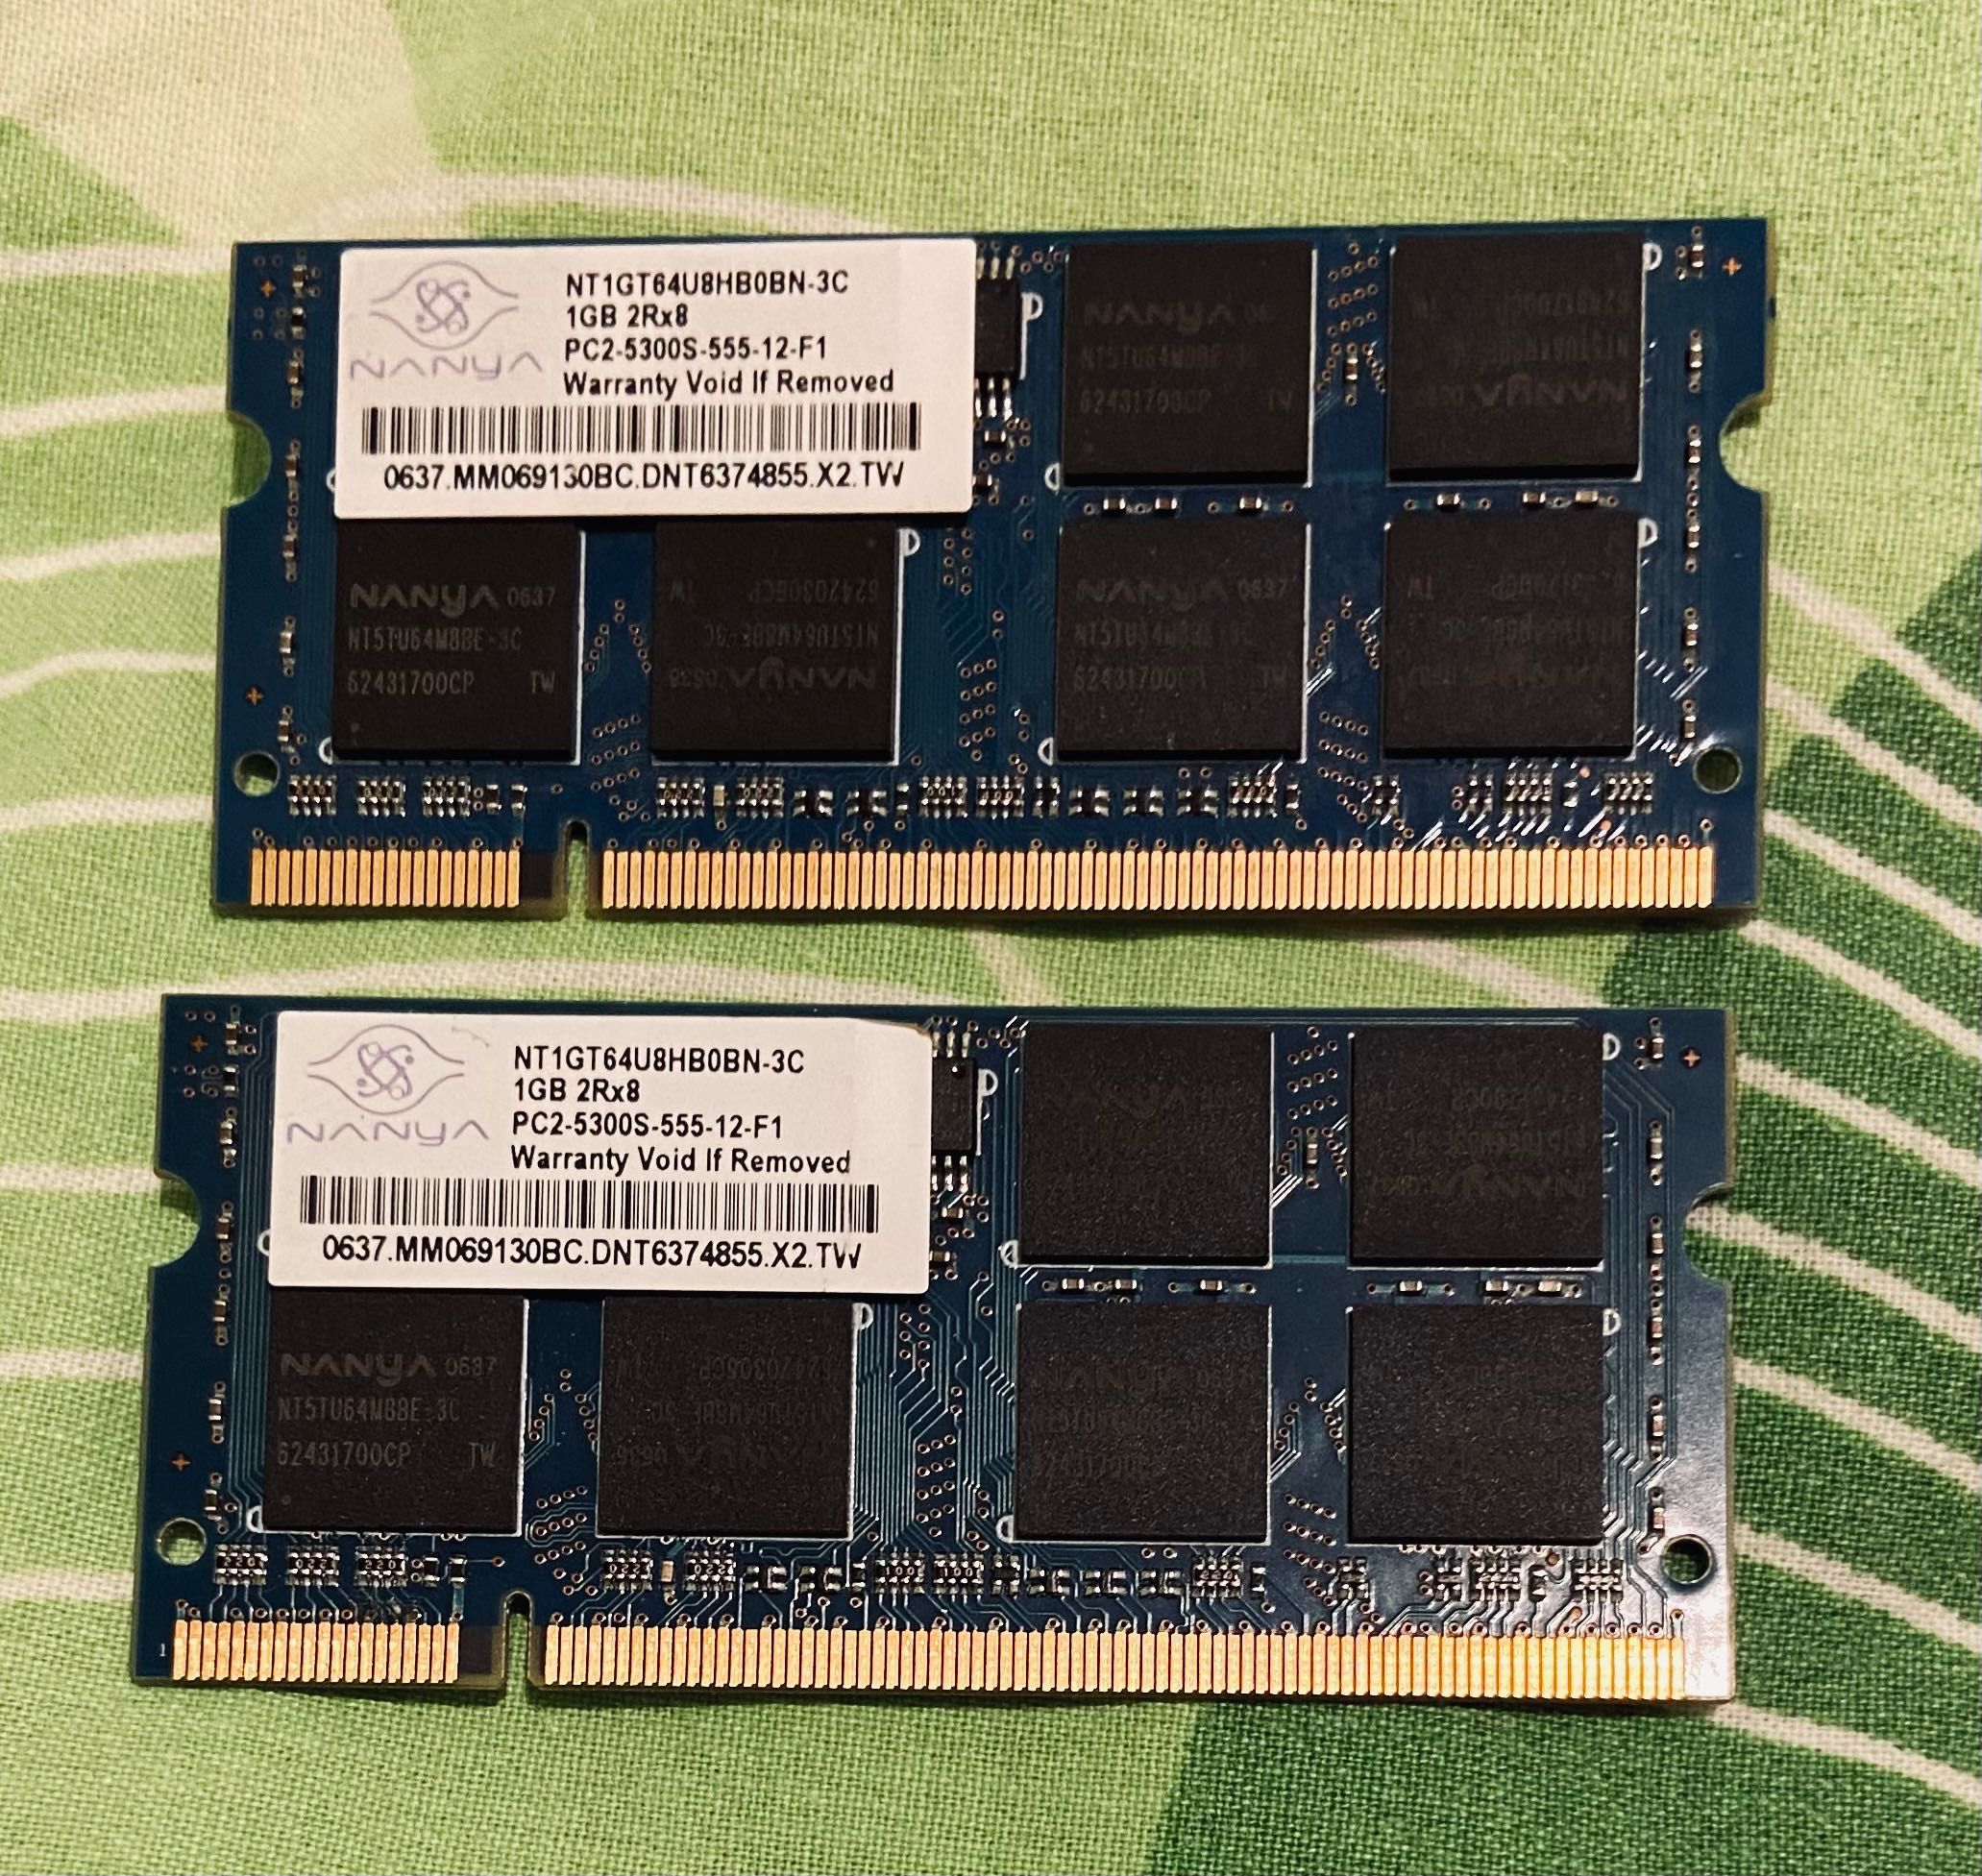 Рам памети/RAM 1 GB